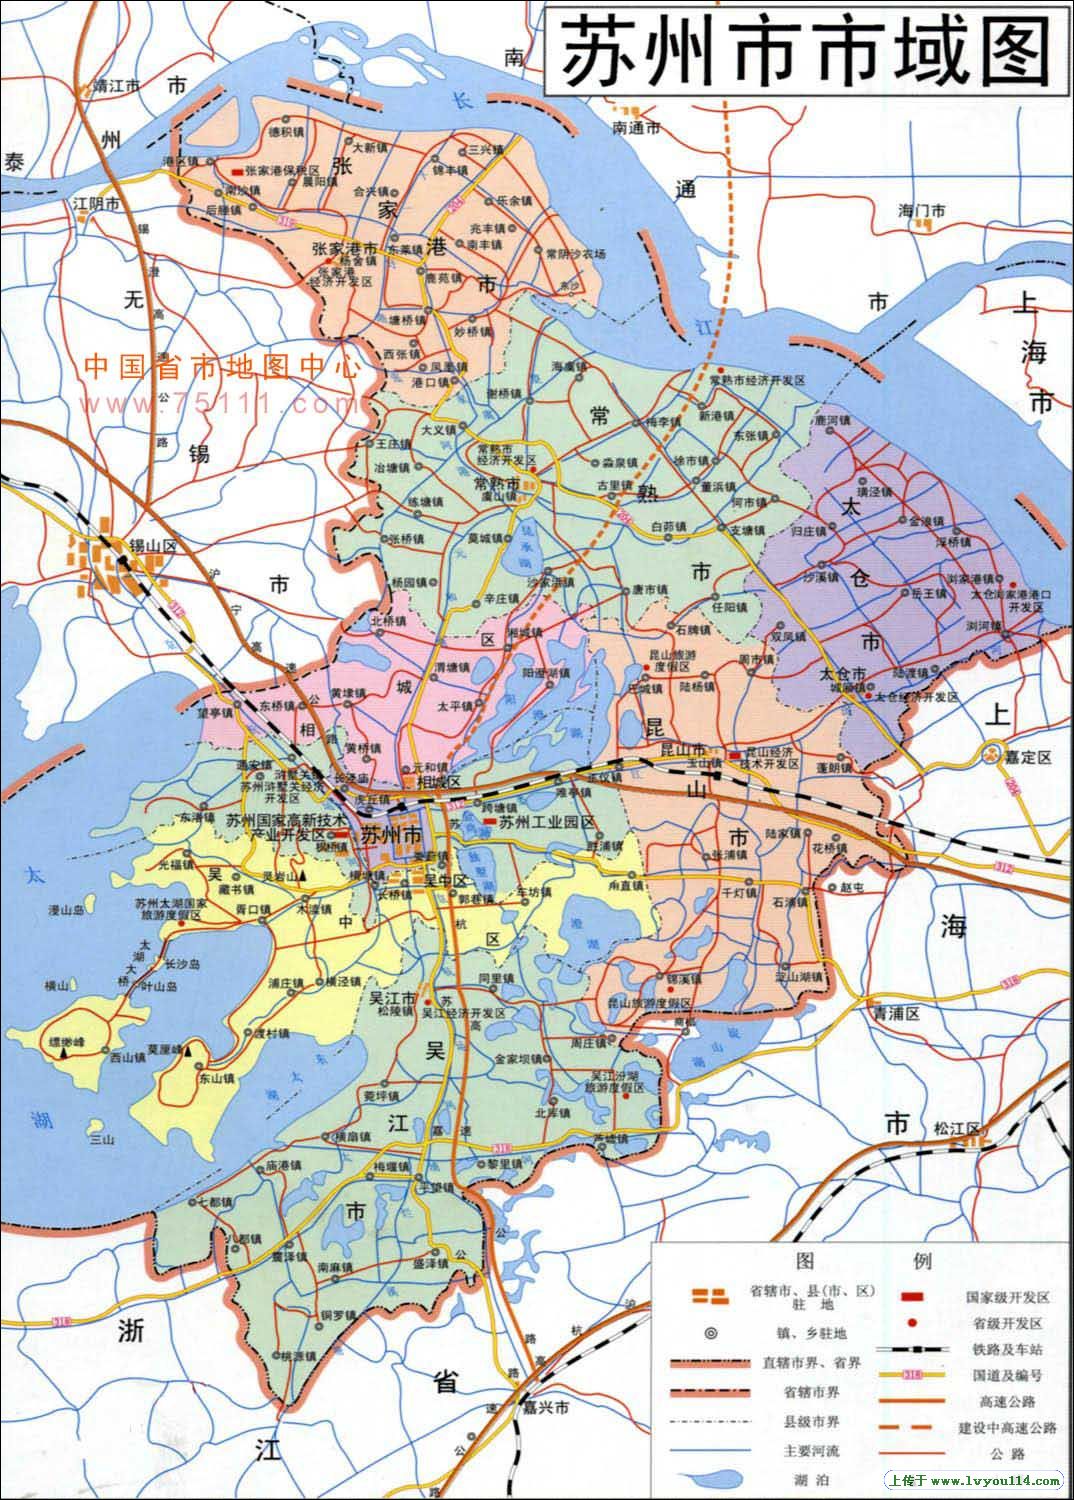 江苏省行政区划 - 苏南、苏中、苏北 【地图可视化】_哔哩哔哩_bilibili